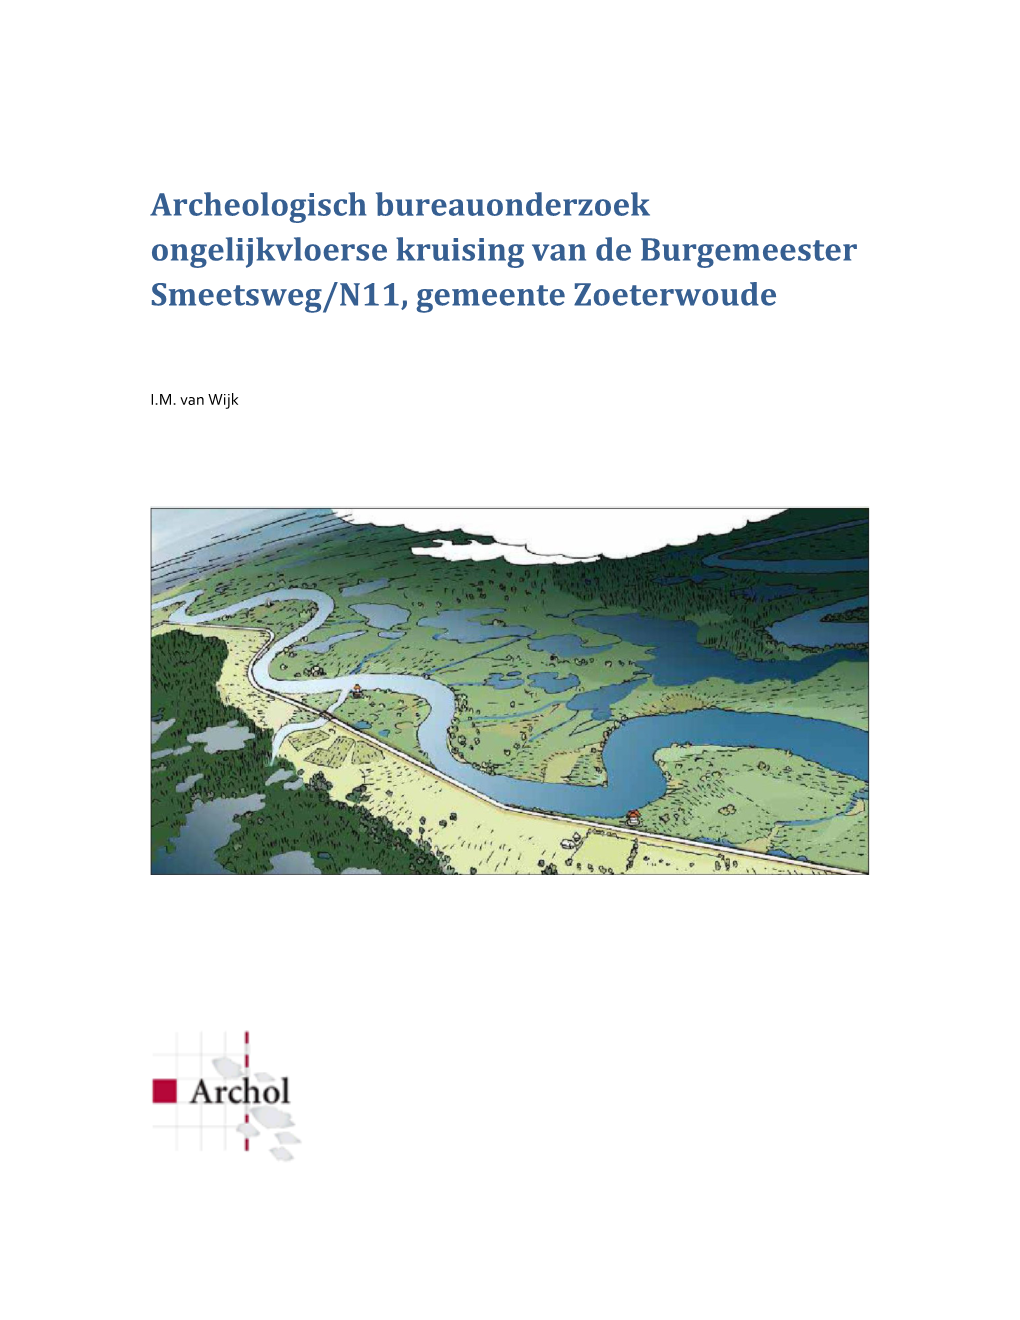 Archeologisch Bureauonderzoek Ongelijkvloerse Kruising Van De Burgemeester Smeetsweg/N11, Gemeente Zoeterwoude